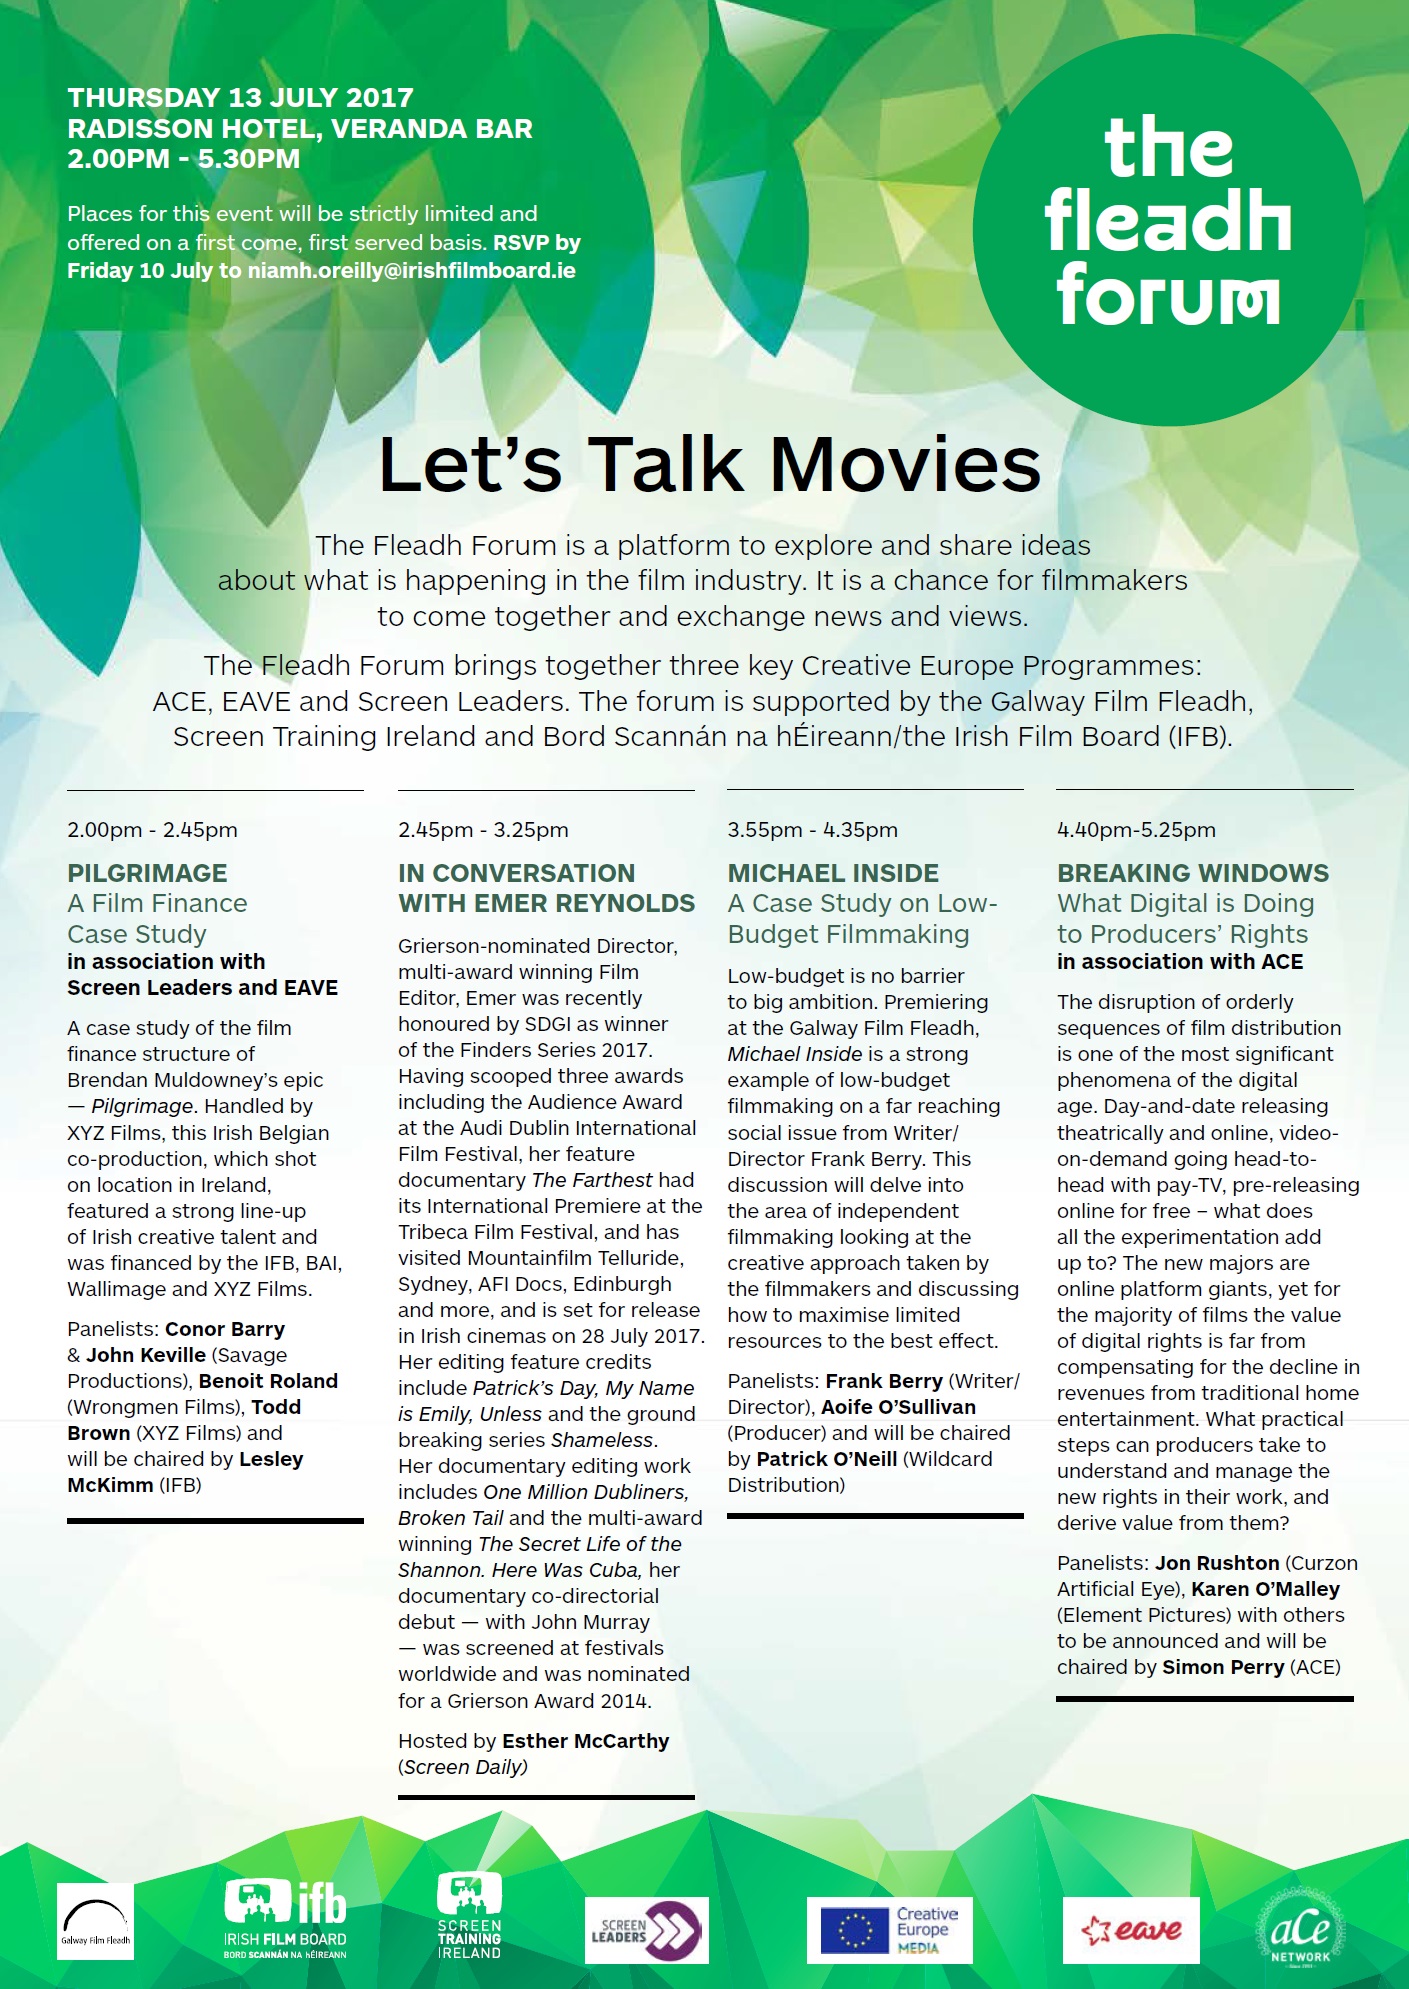 Galway Film Fleadh Forum